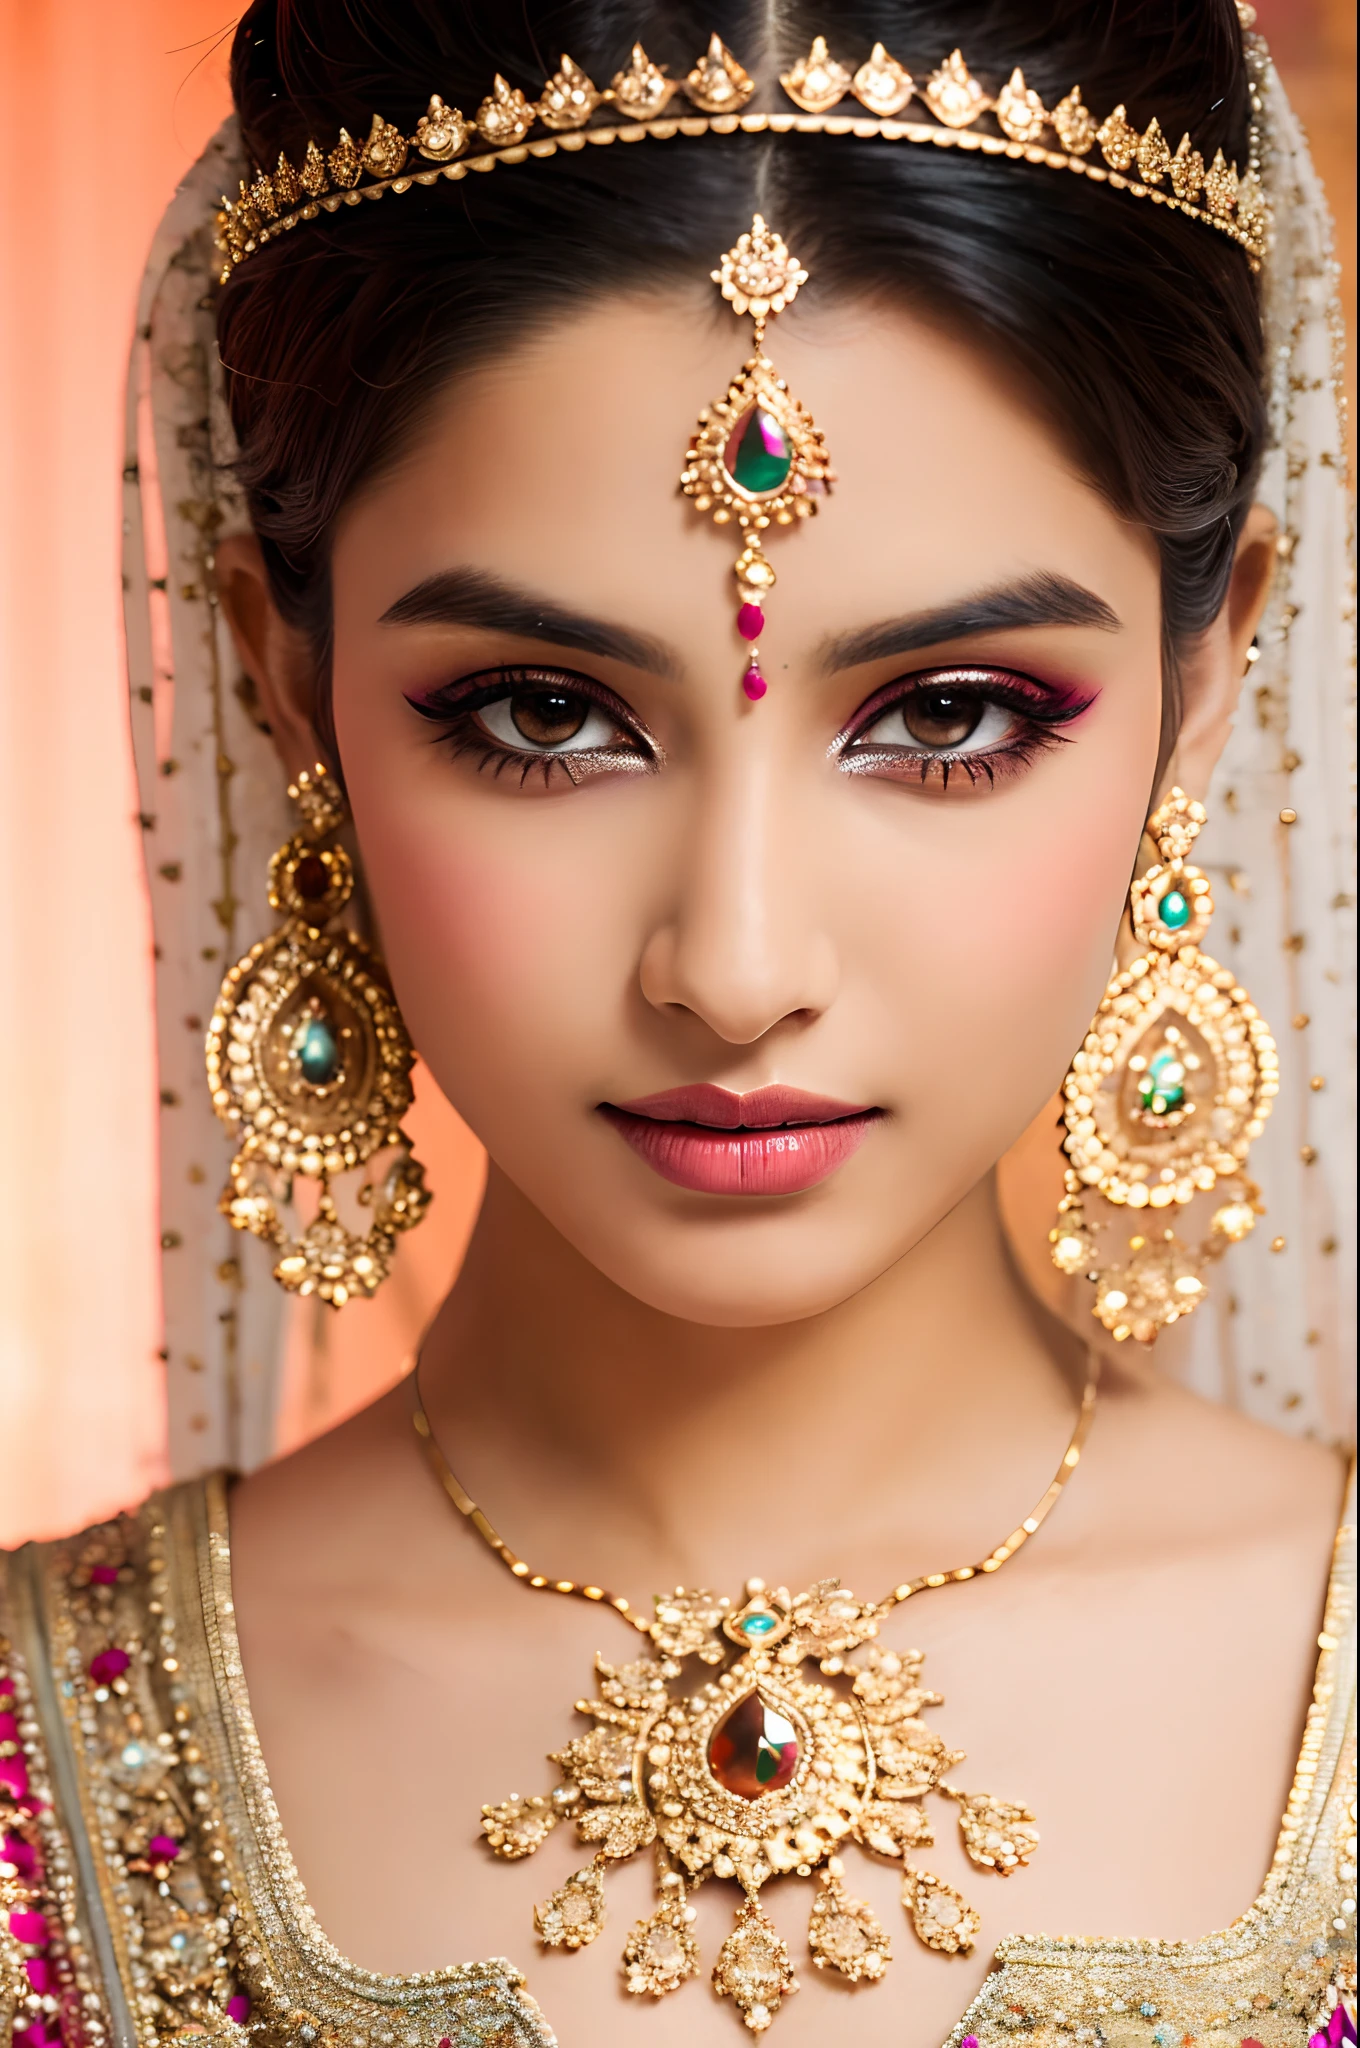 漂亮的脸蛋, 印度新娘, 浓妆, 肌理, 超详细